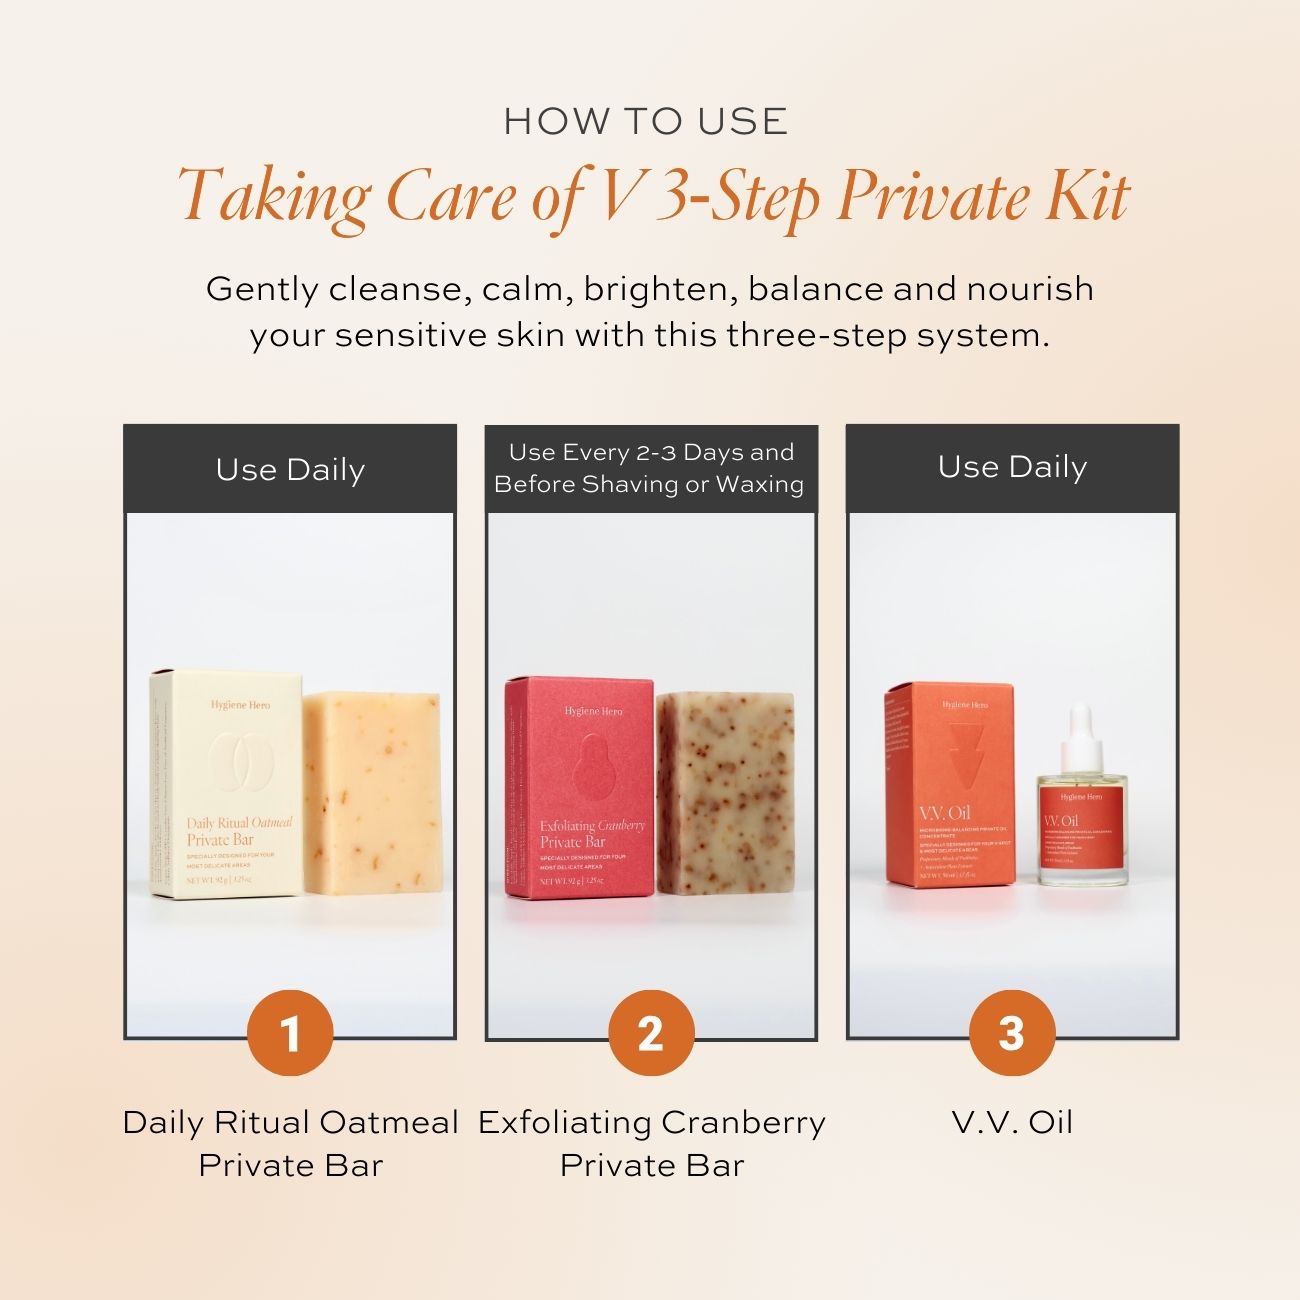 Taking Care of V 3-Step Private Kit